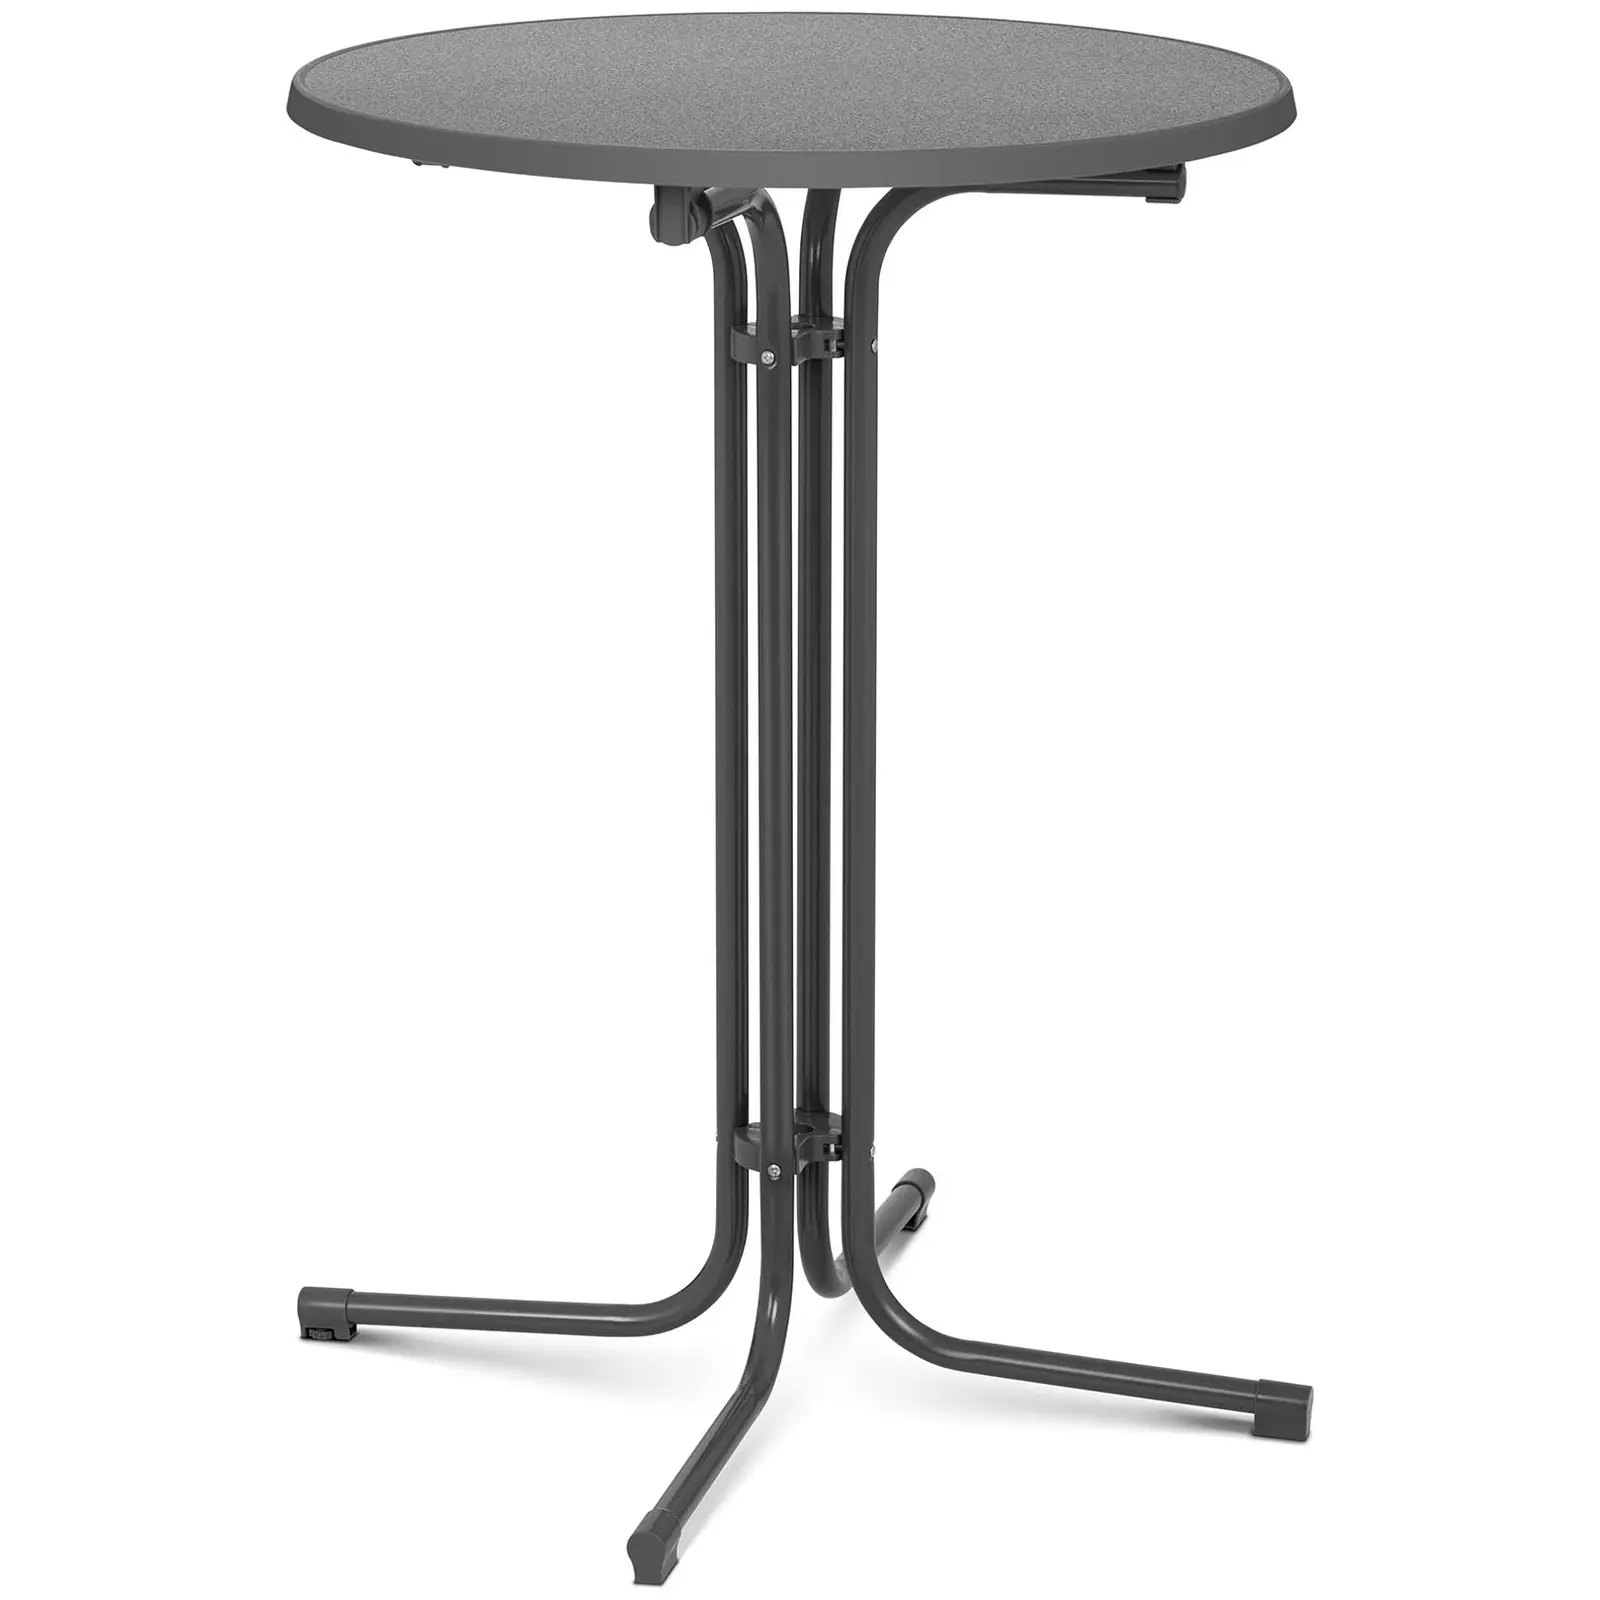 Koktejlový stůl - Ø 80 cm - skládací - šedý